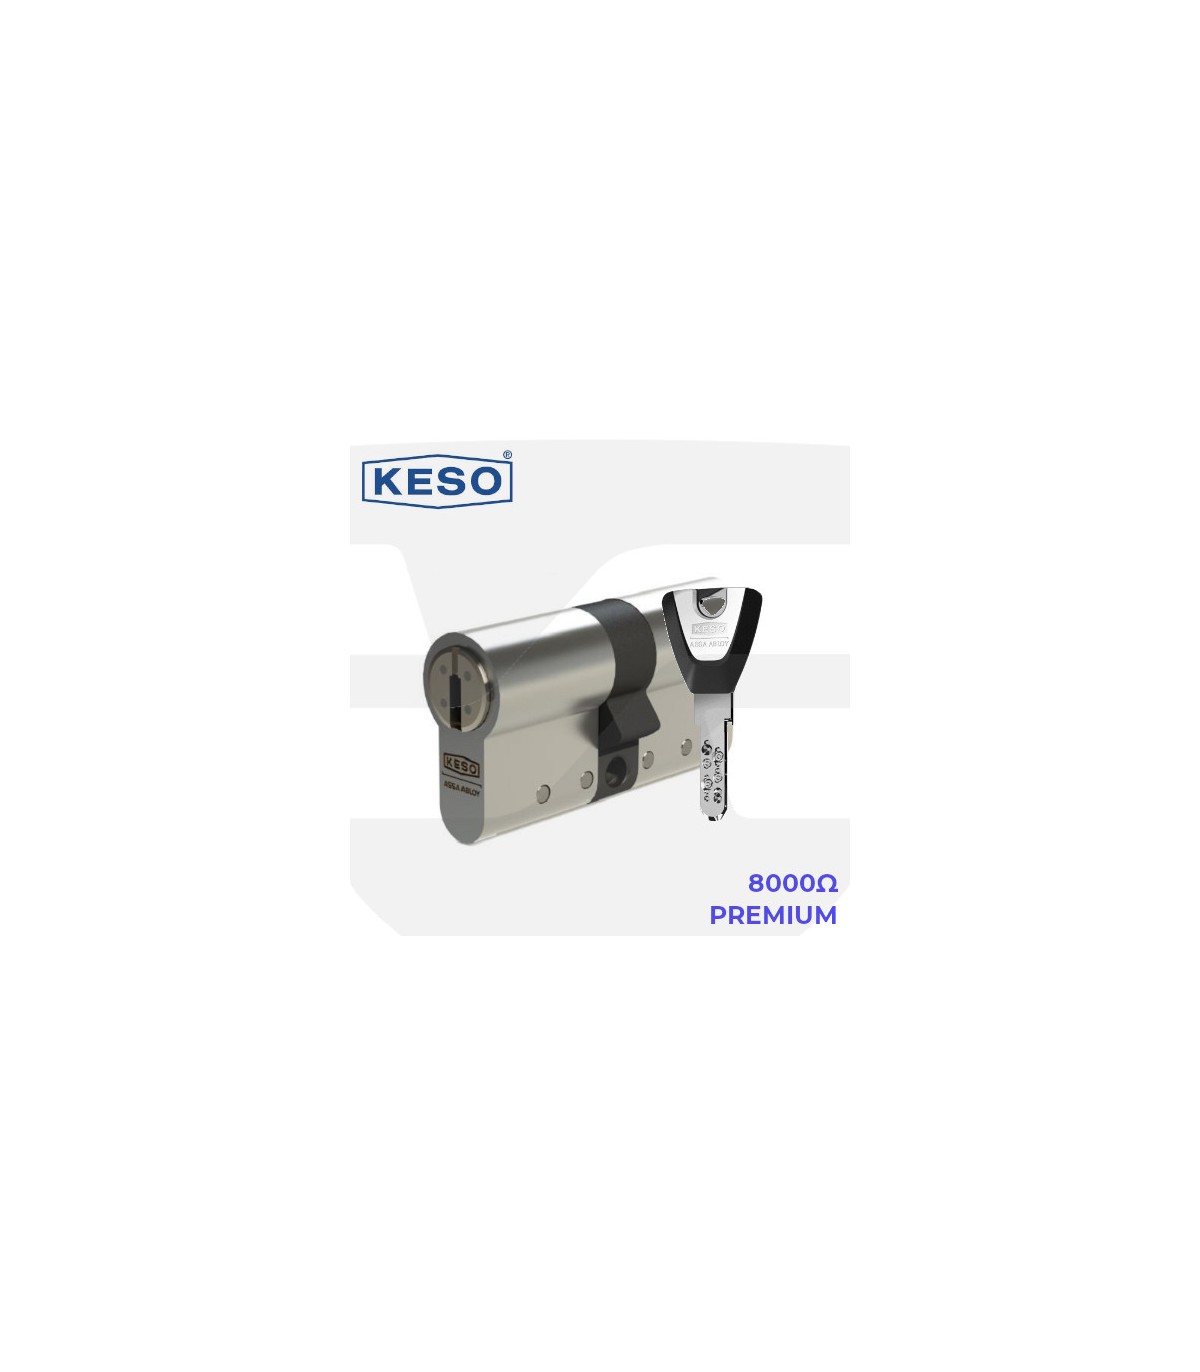 https://ferresegur.es/14907-superlarge_default/80002-premium-keso-cilindro-alta-seguridad.jpg